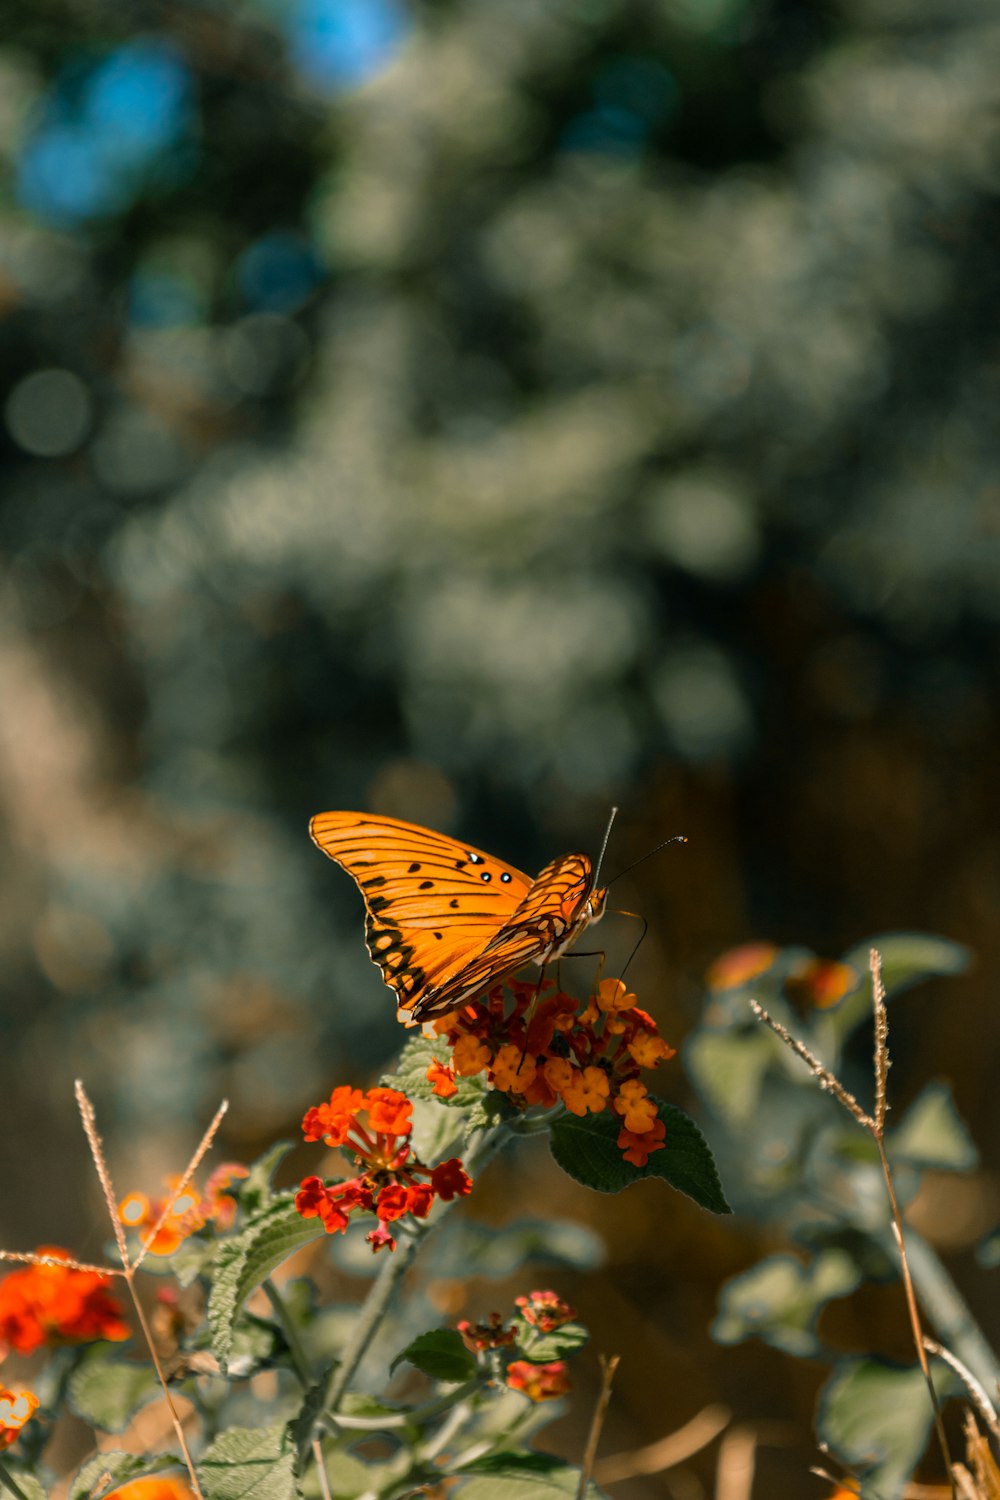 borboleta marrom e preta empoleirada na flor de laranjeira em fotografia de perto durante o dia